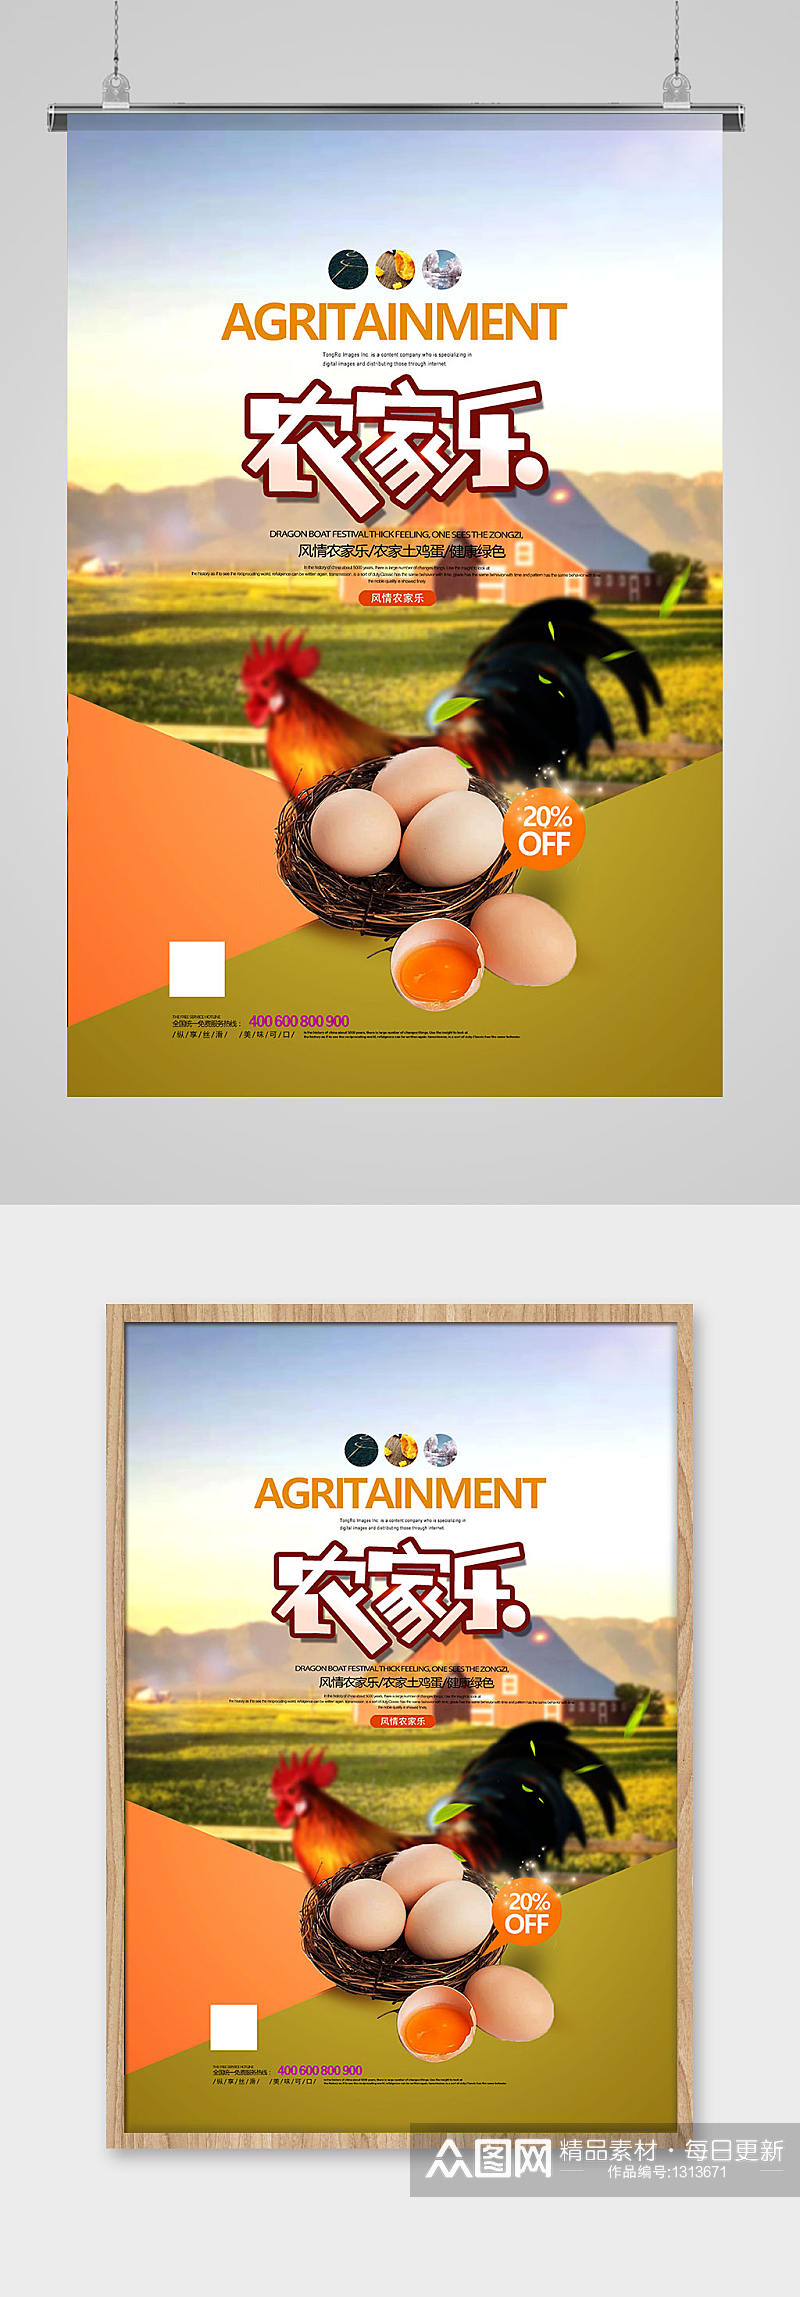 农家特产土鸡蛋农家乐宣传海报设计素材